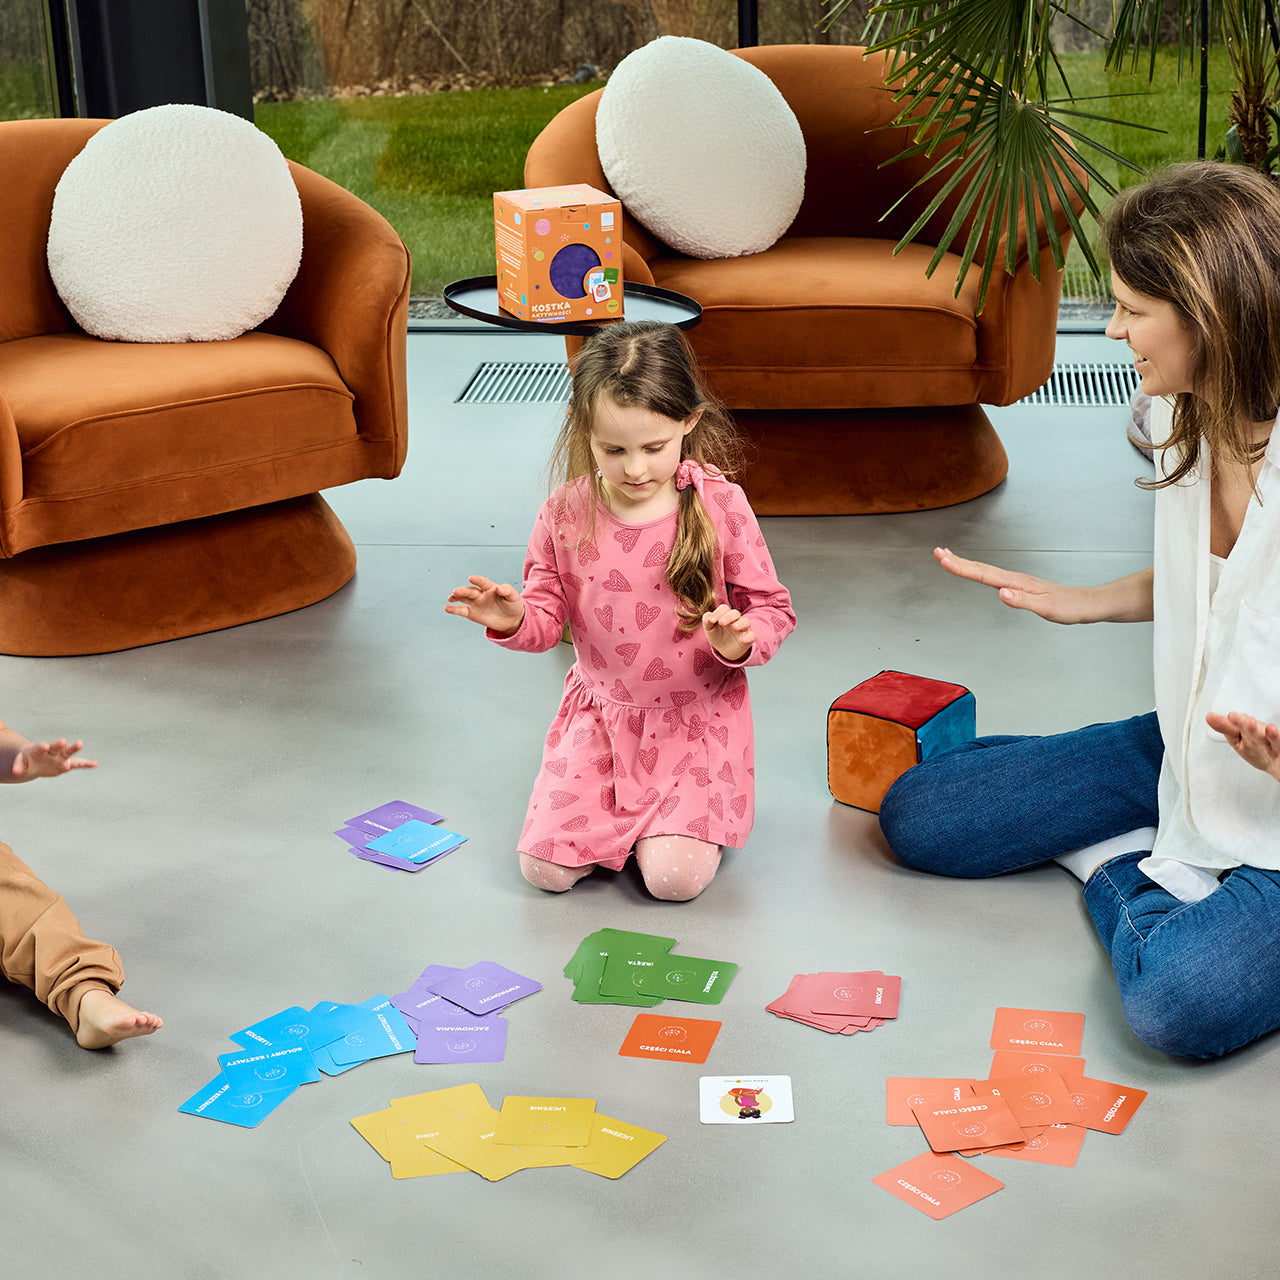 Na zdjęciu widocznych dwoje dzieci - chłopiec i dziewczynka - oraz kobieta. Wszyscy siedzą na podłodze i grają w grę "Kostka aktywności - nauka przez zabawę"